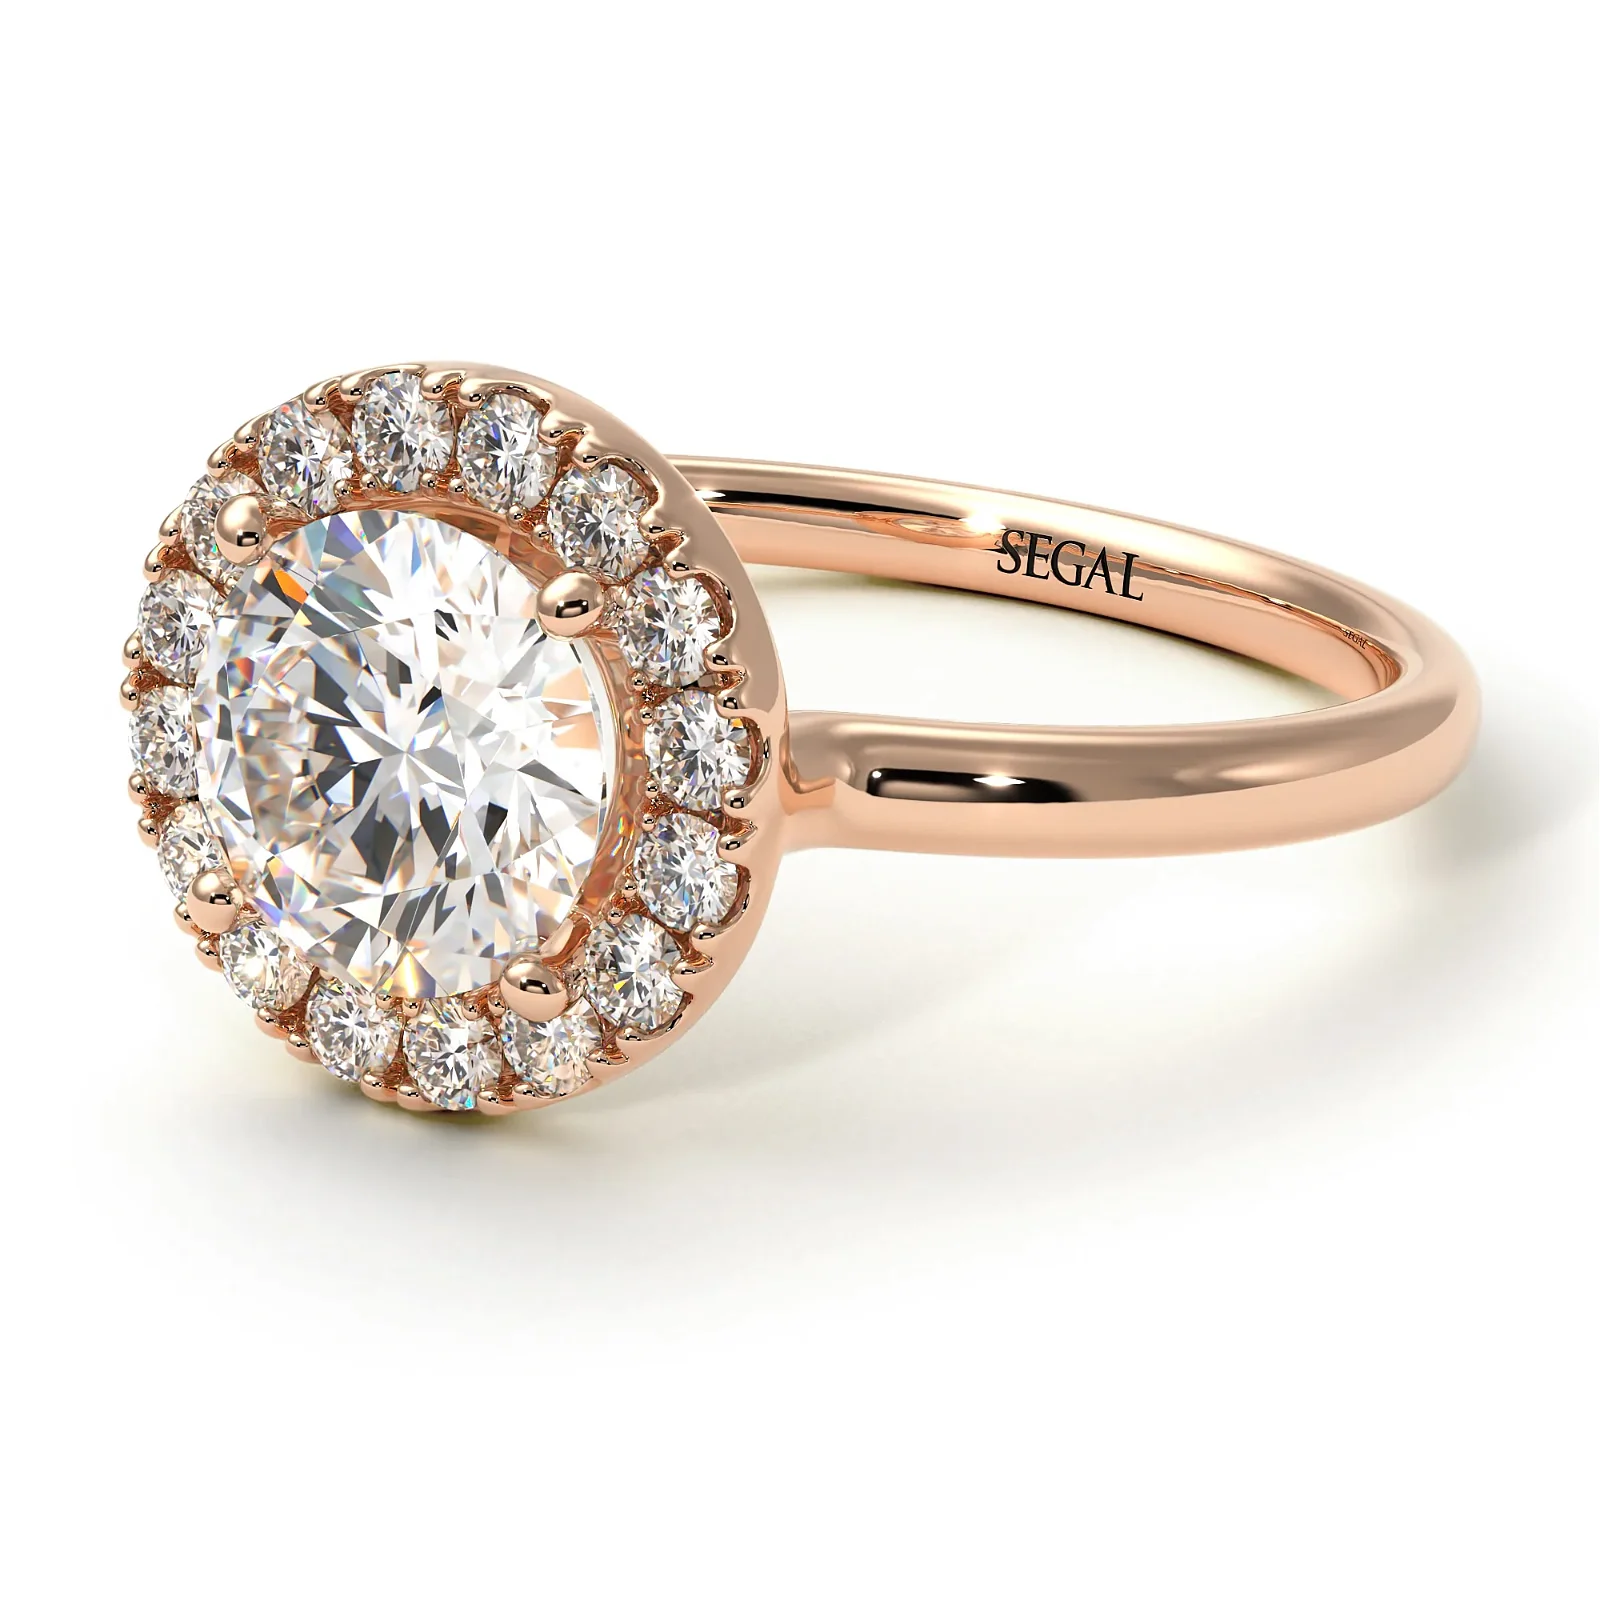 Image of 1ct Round Diamond Engagement Ring - Natalia No. 2